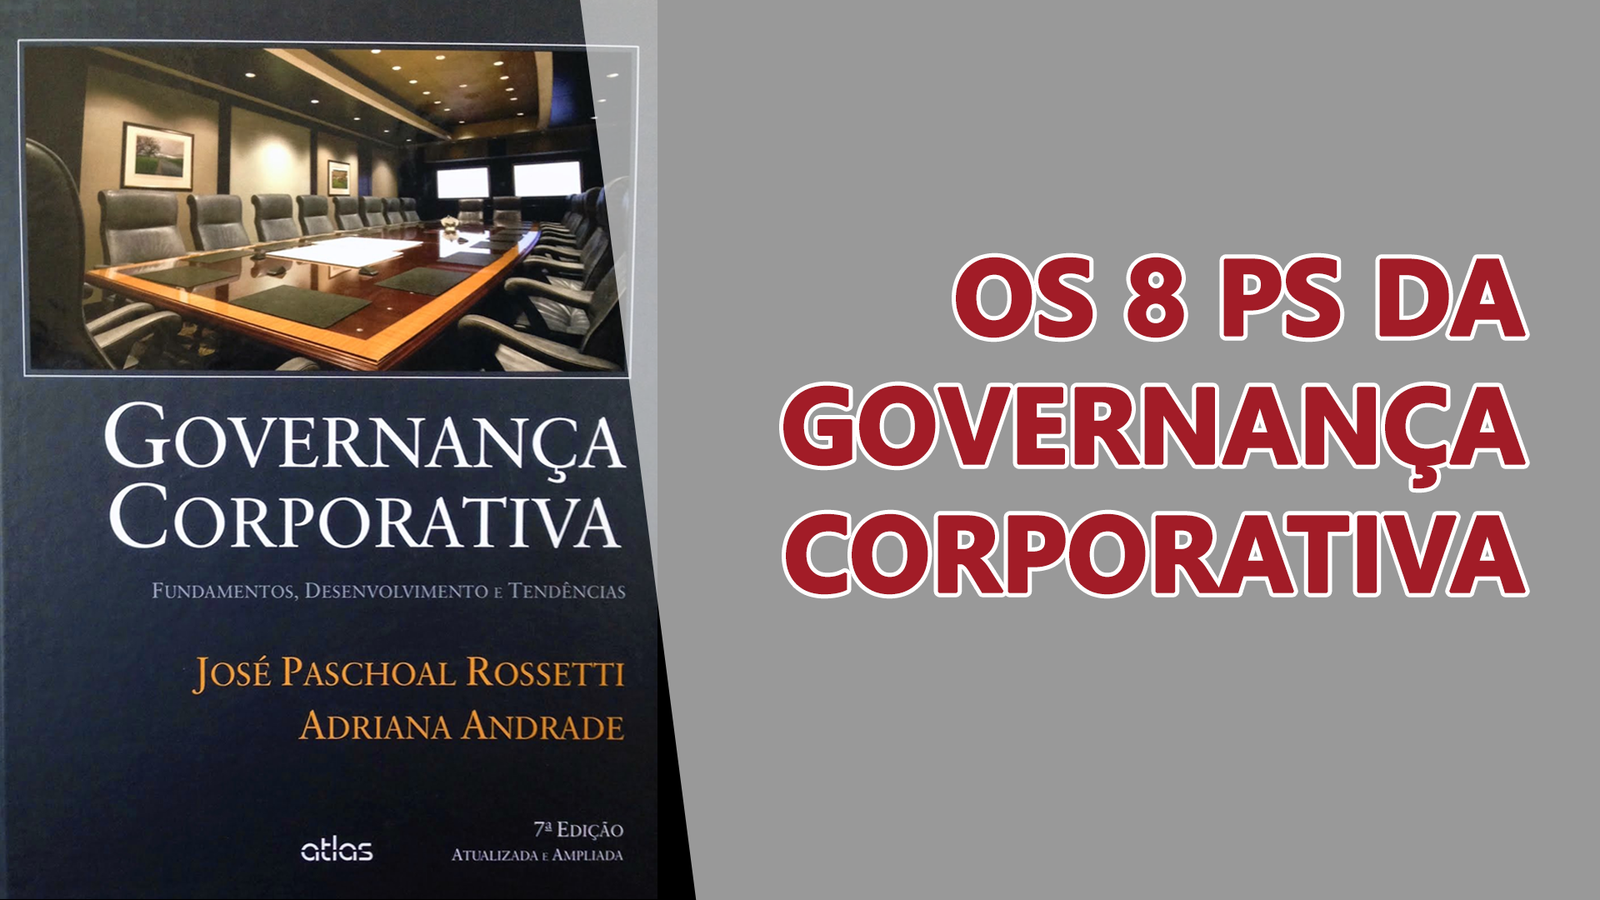 Confira a trilha “8Ps da Governança Corporativa” no canal do YouTube